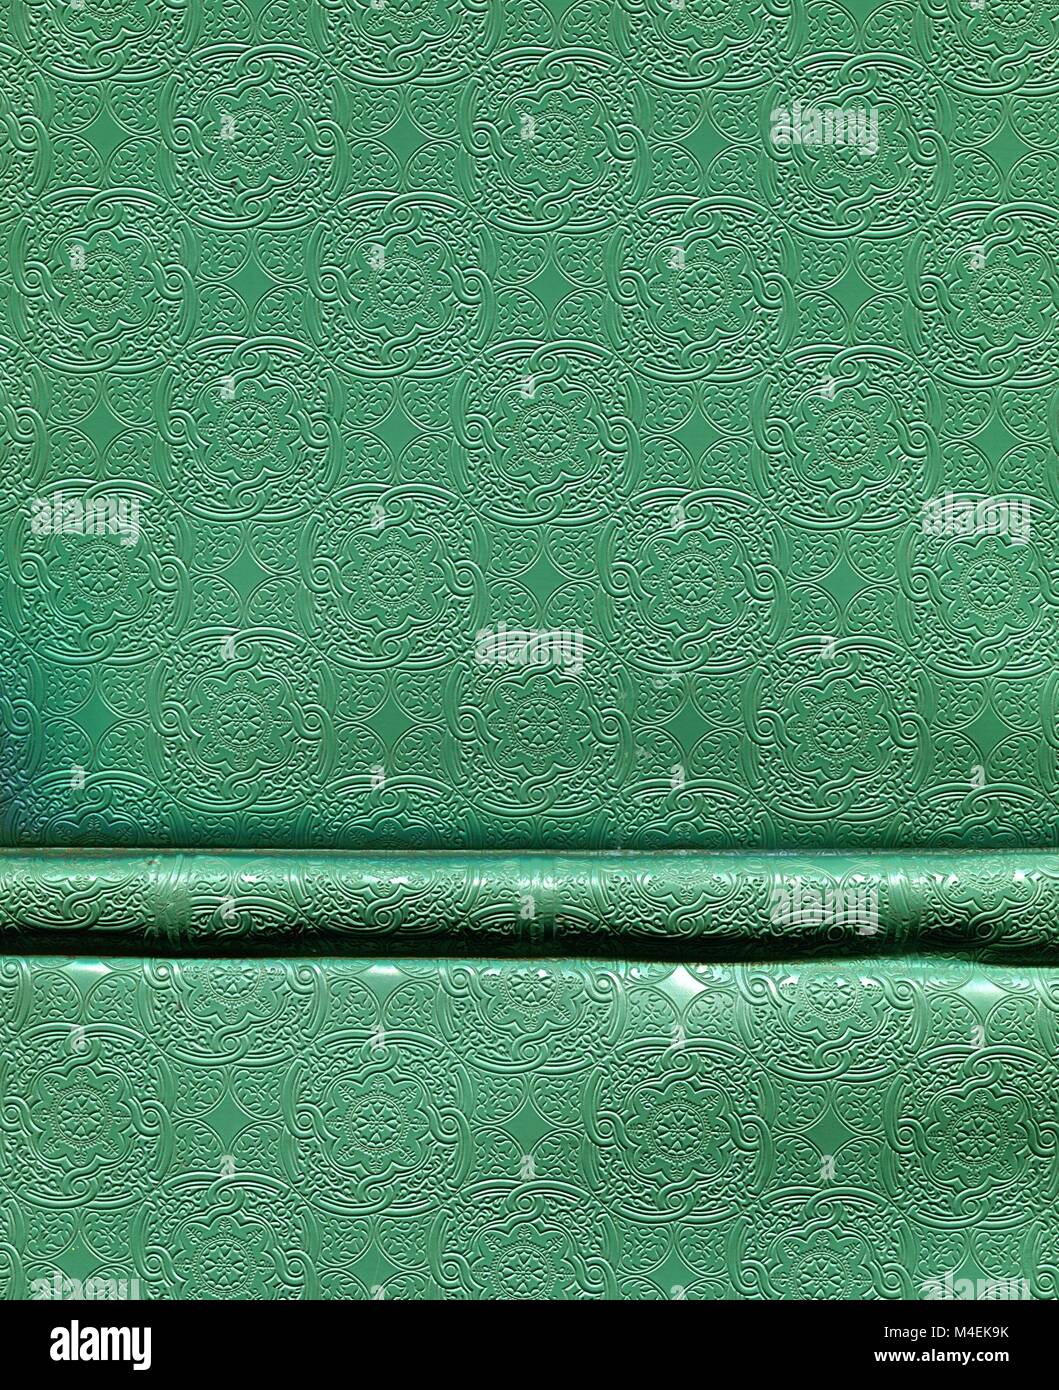 Couverture du livre vert avec motifs en relief Banque D'Images